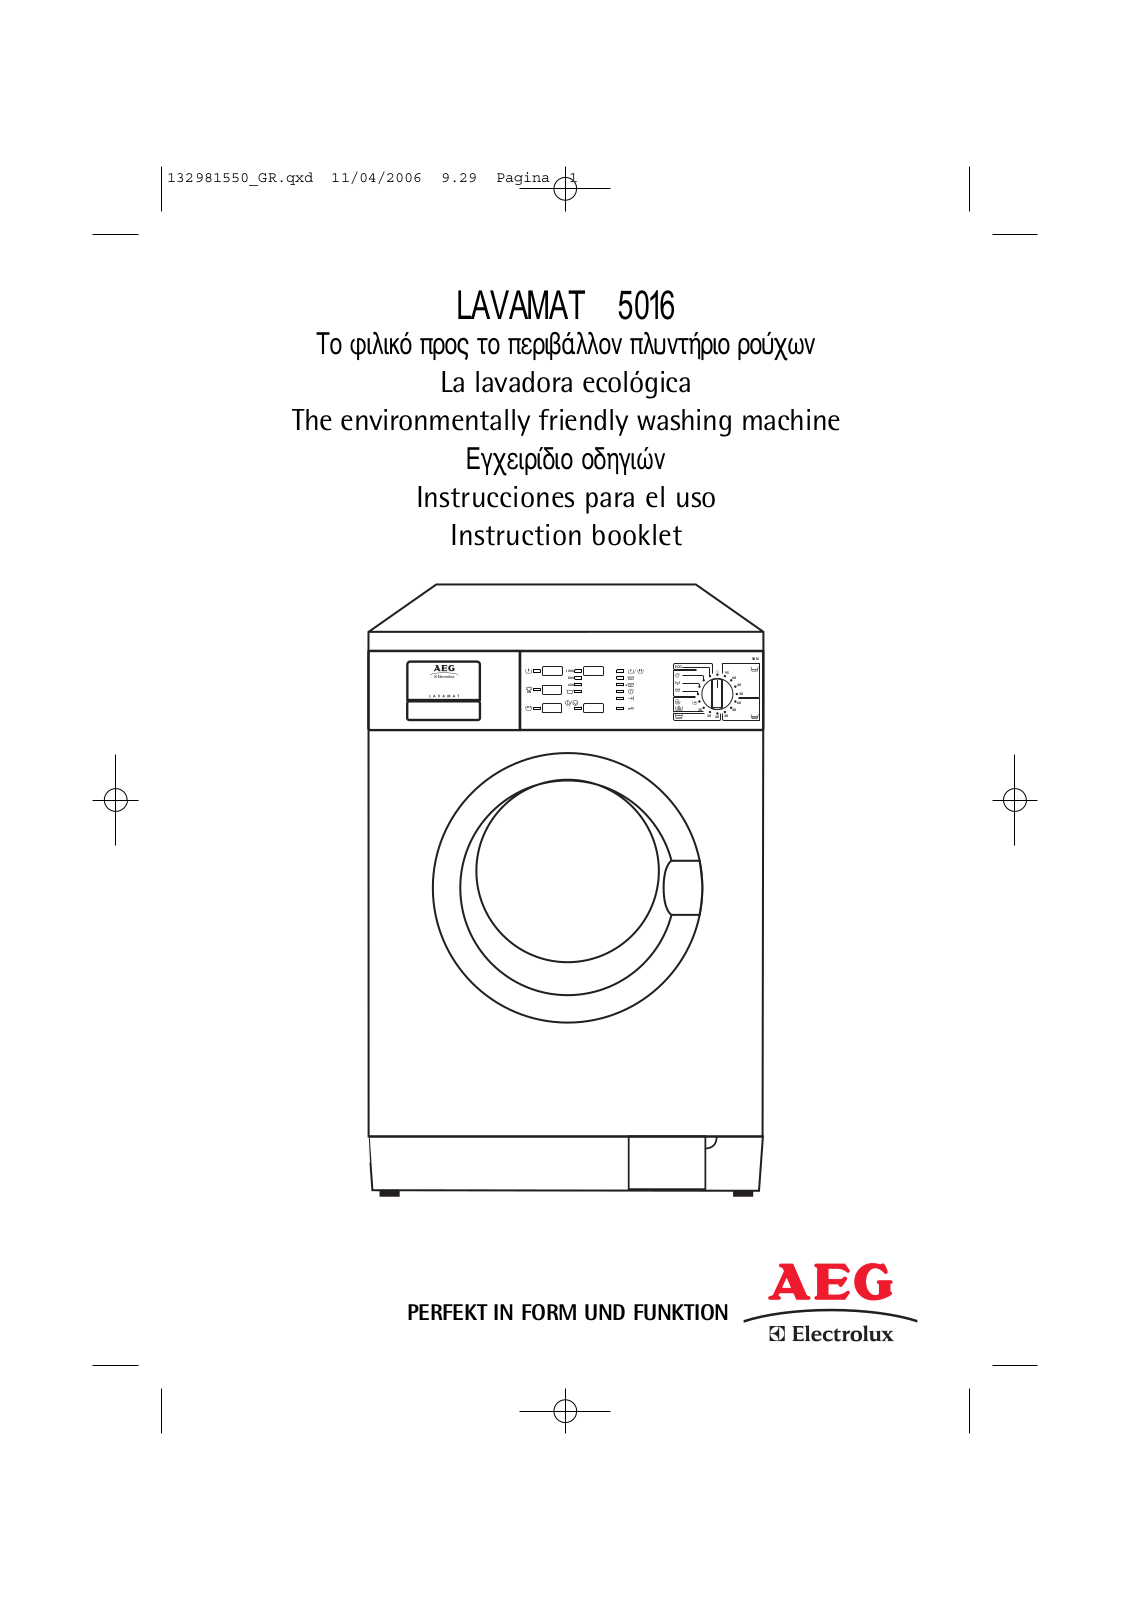 AEG L5016 User Manual